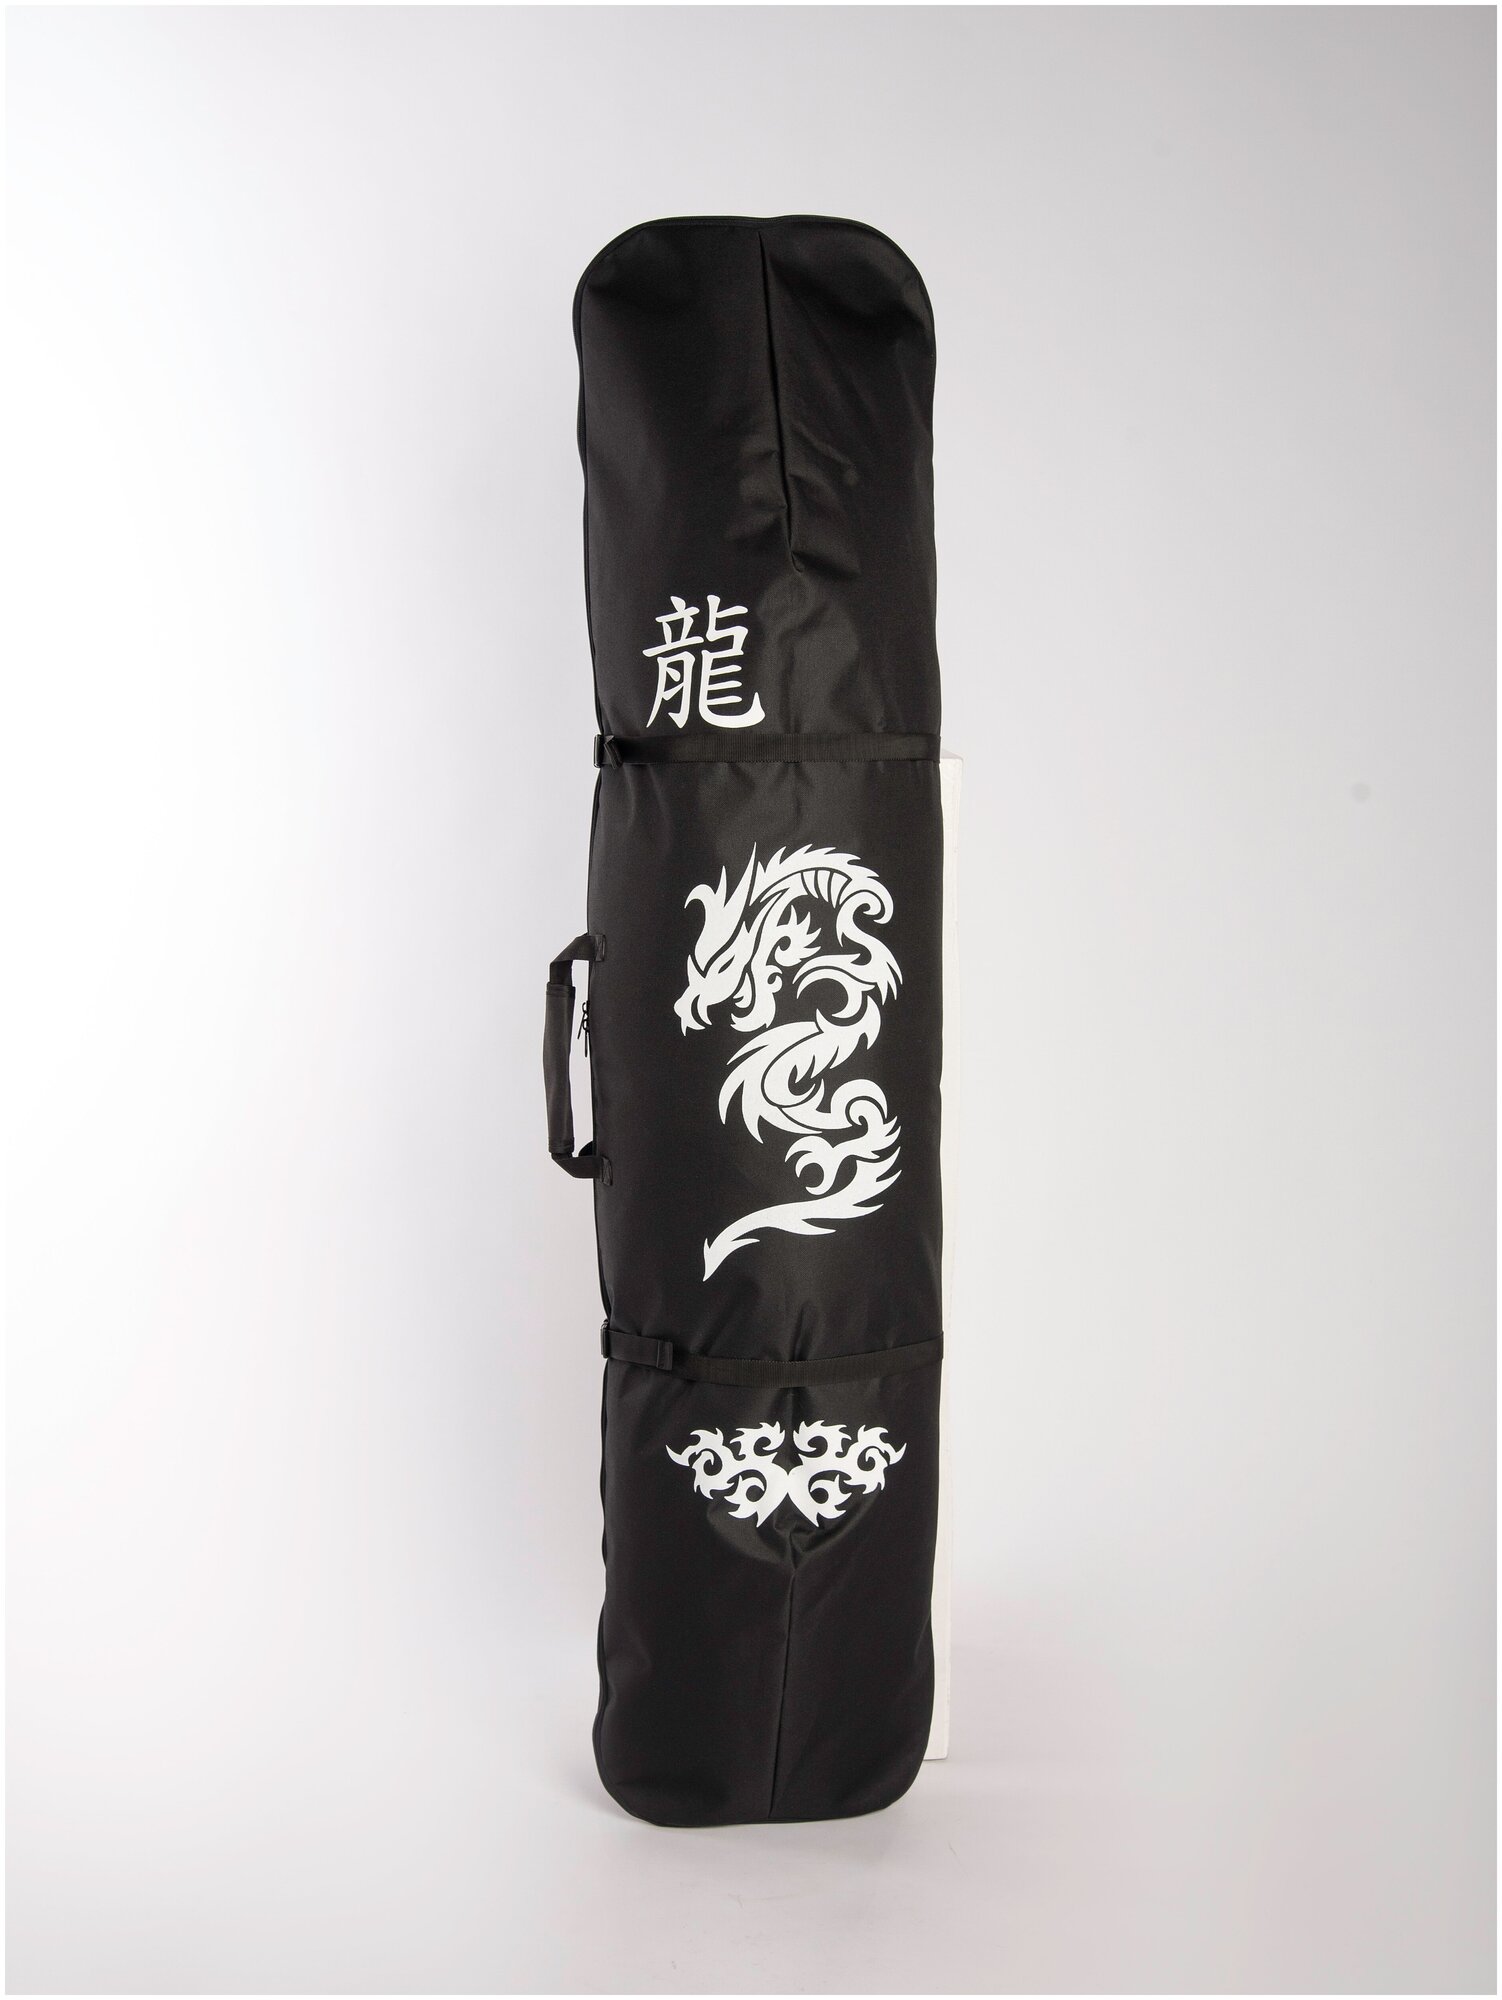 Чехол для сноуборда "Рюкзак Дракон" длина 170 см цвет чёрный